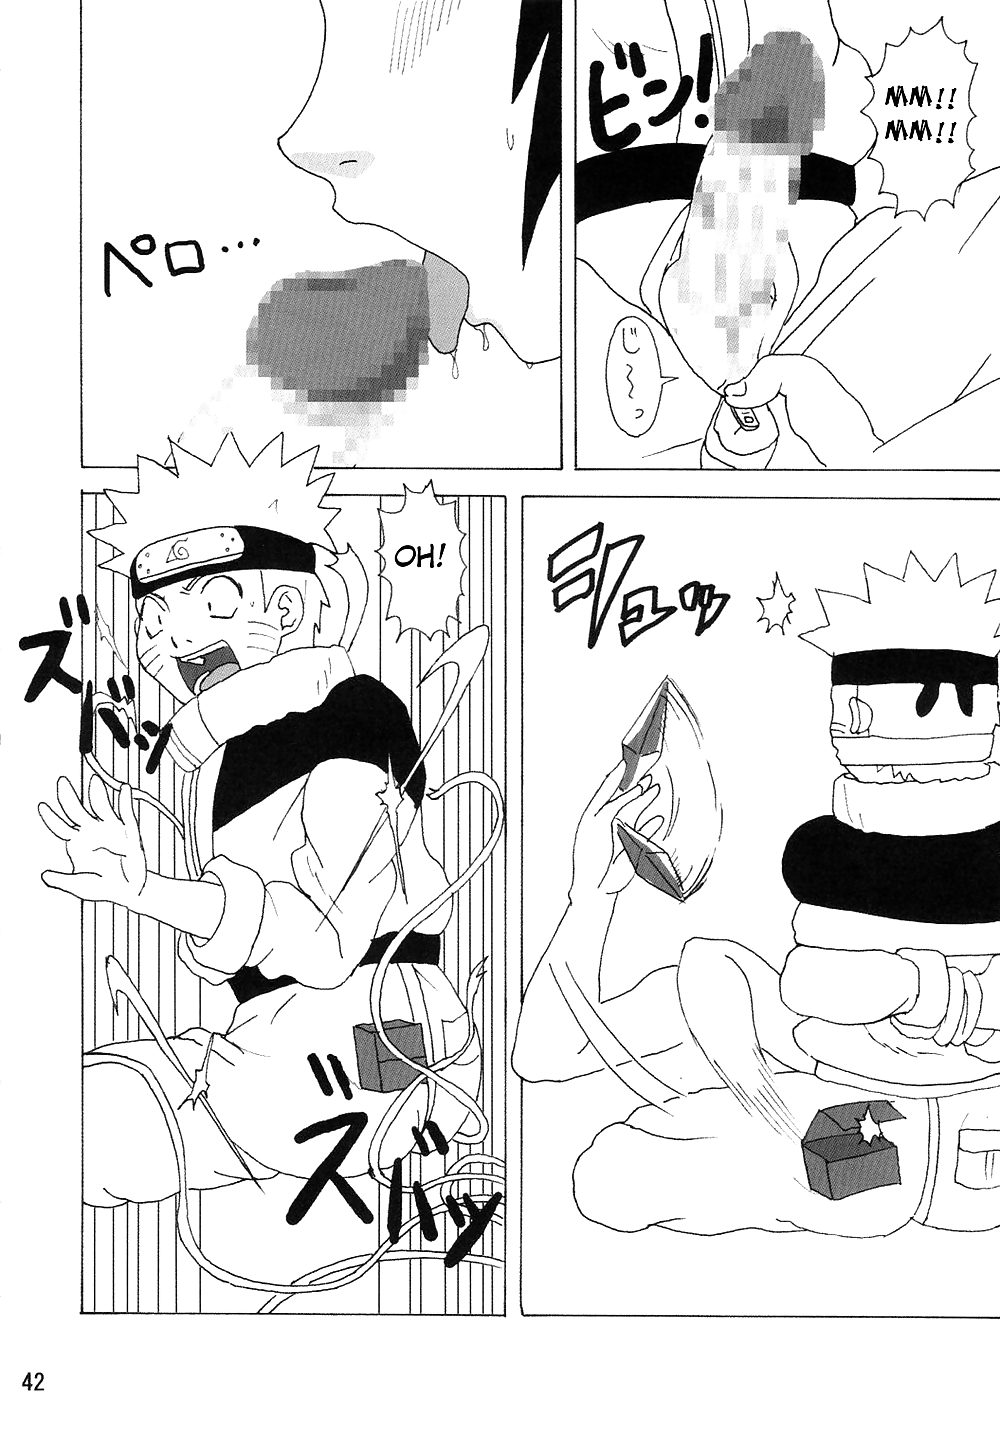 Naruto Doujin - Miratarashi Anko Hon #4806993